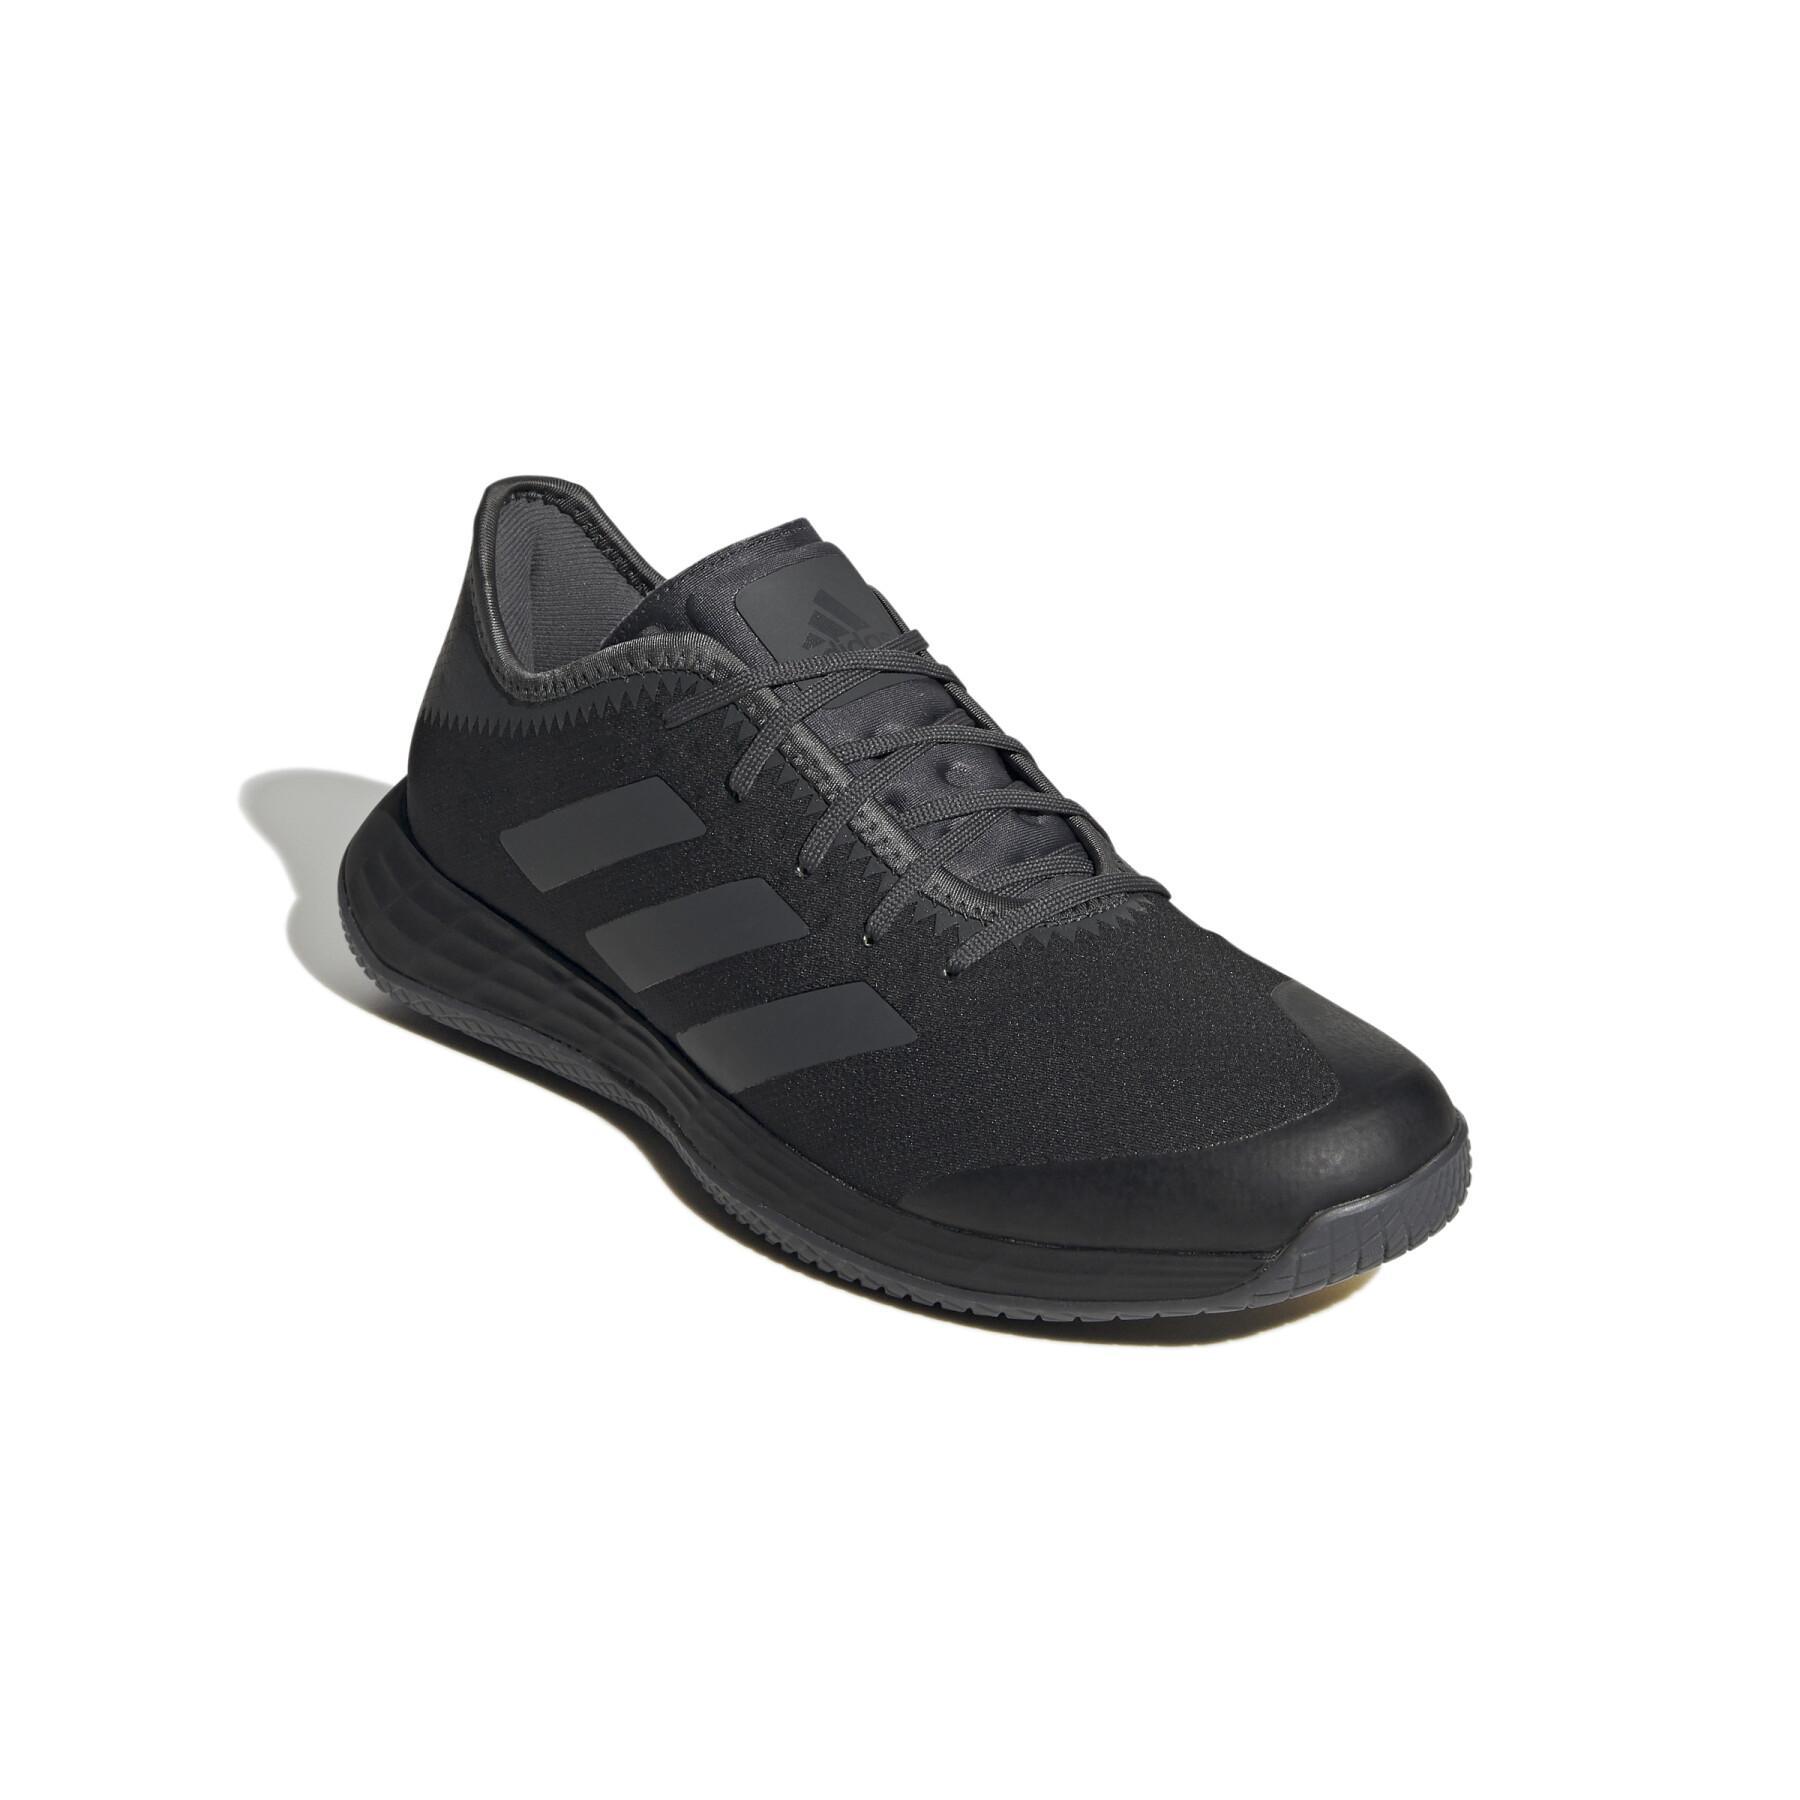 Chaussures adidas Adizero Fastcourt Handball